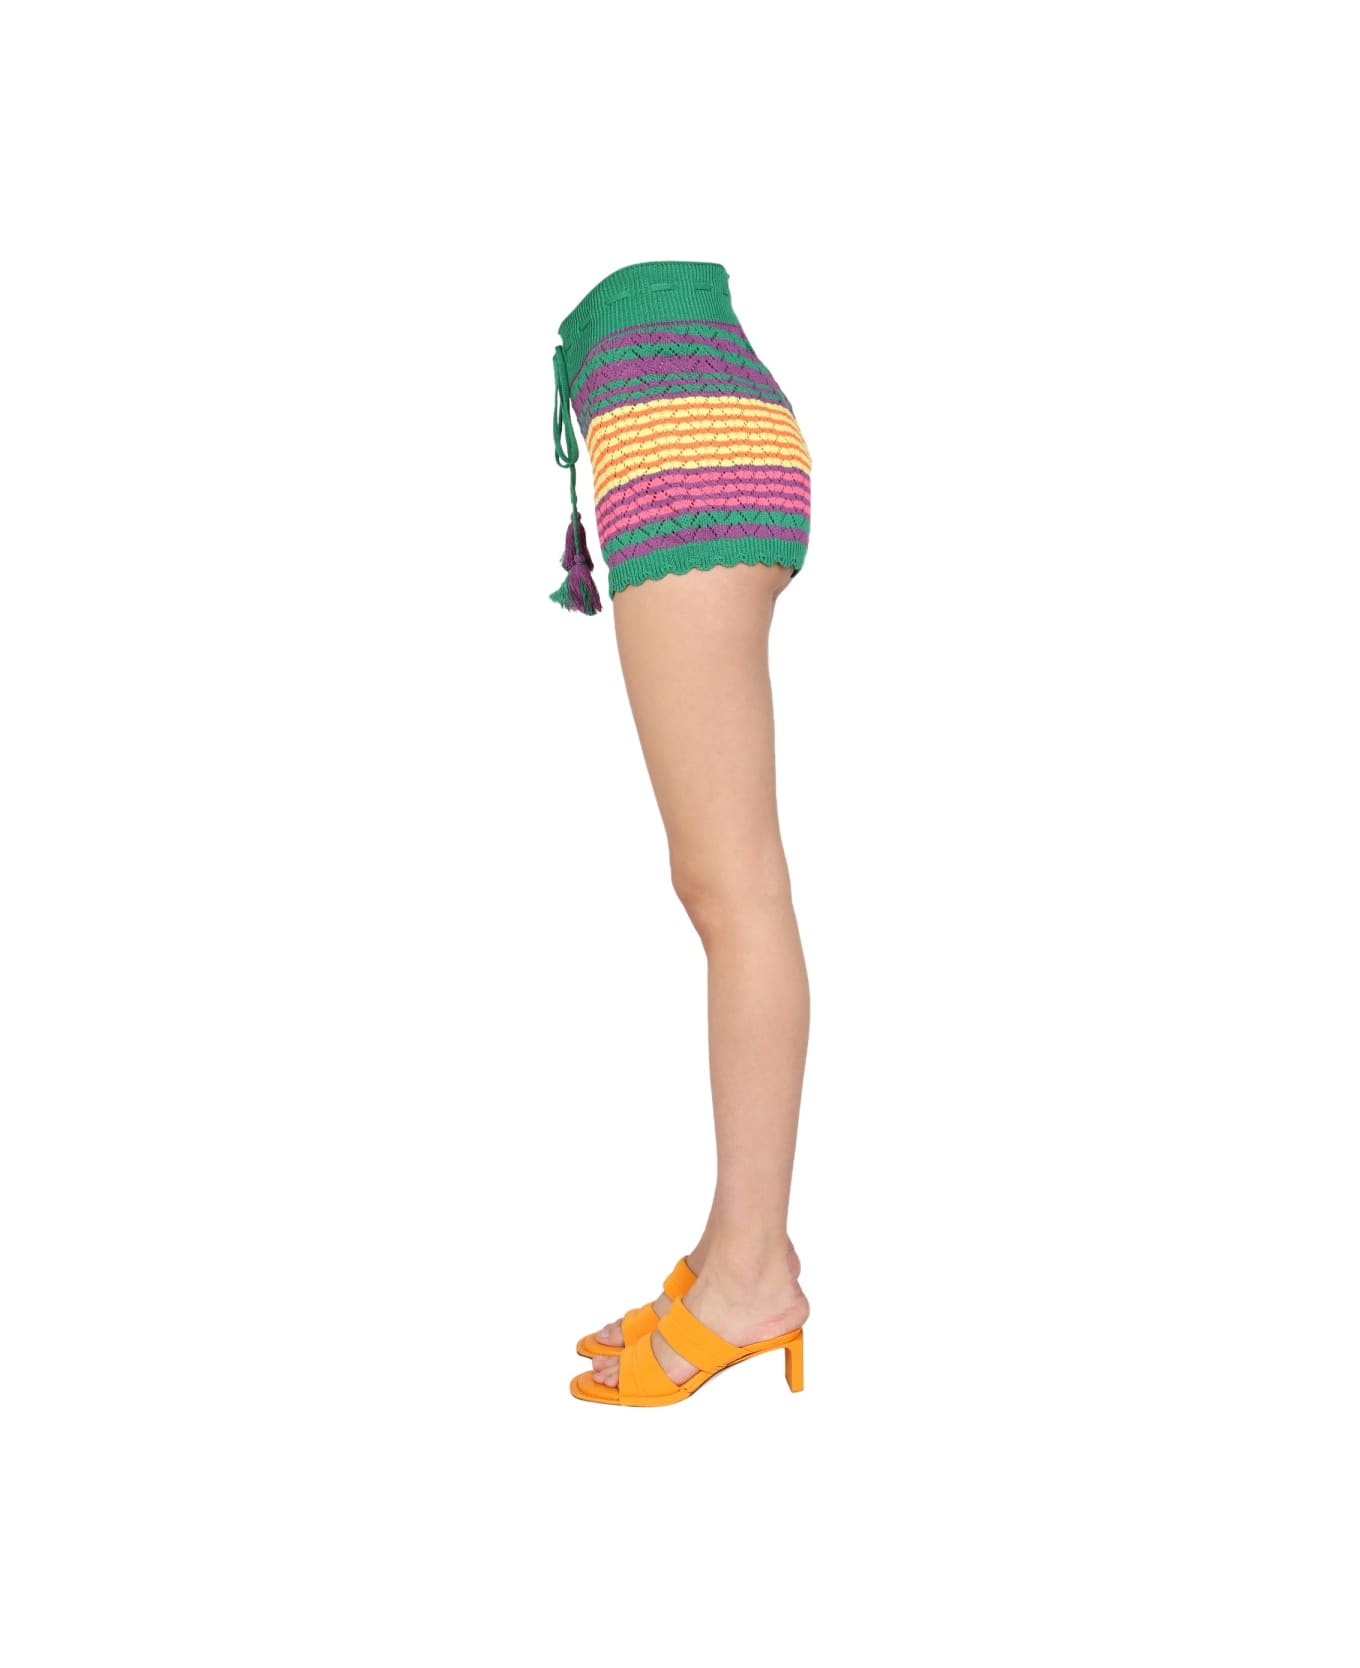 Gallo Stripe Pattern Shorts - MULTICOLOUR